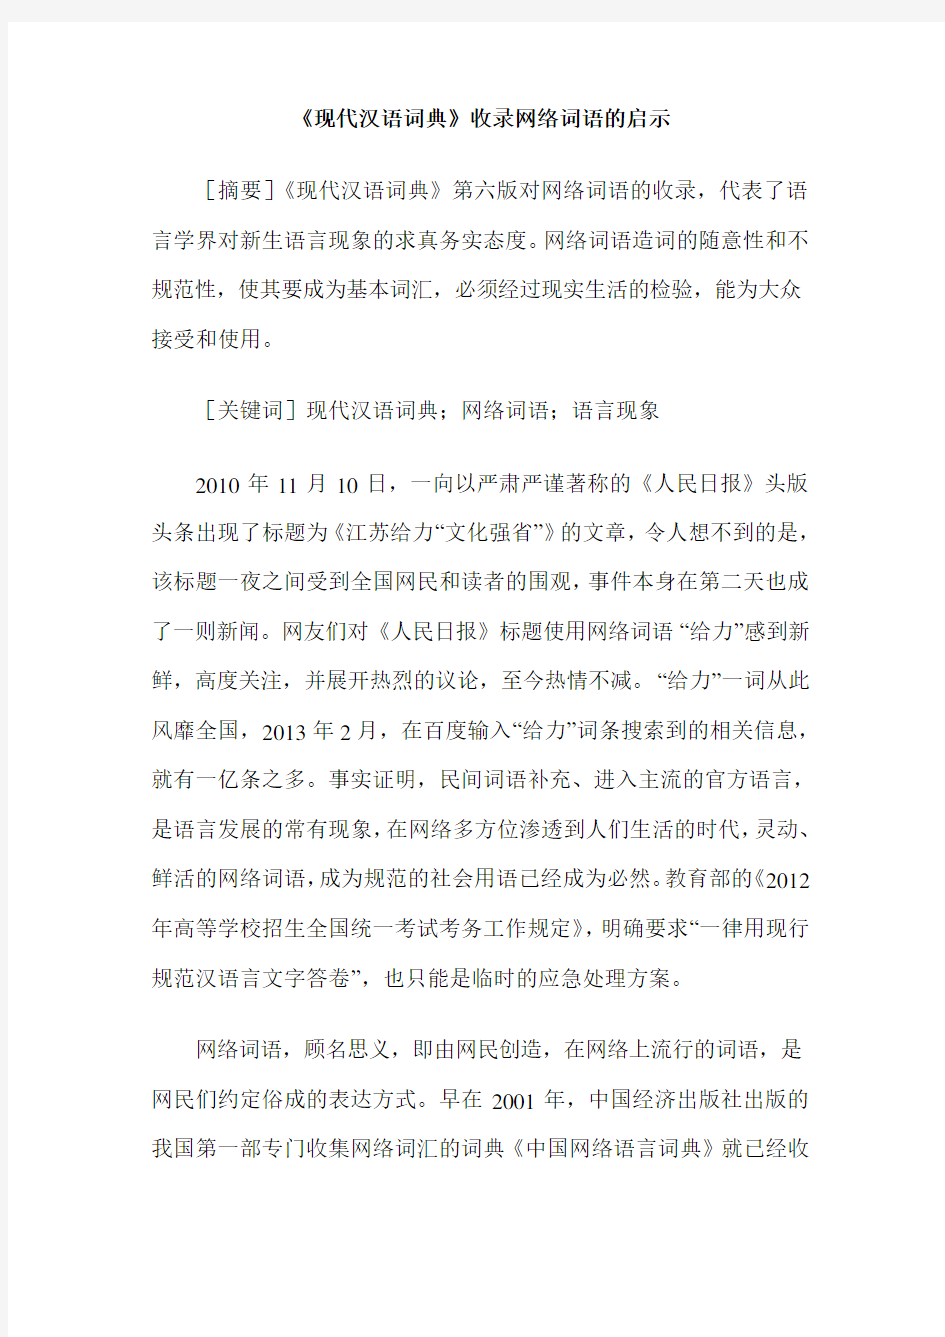 《现代汉语词典》收录网络词语的启示